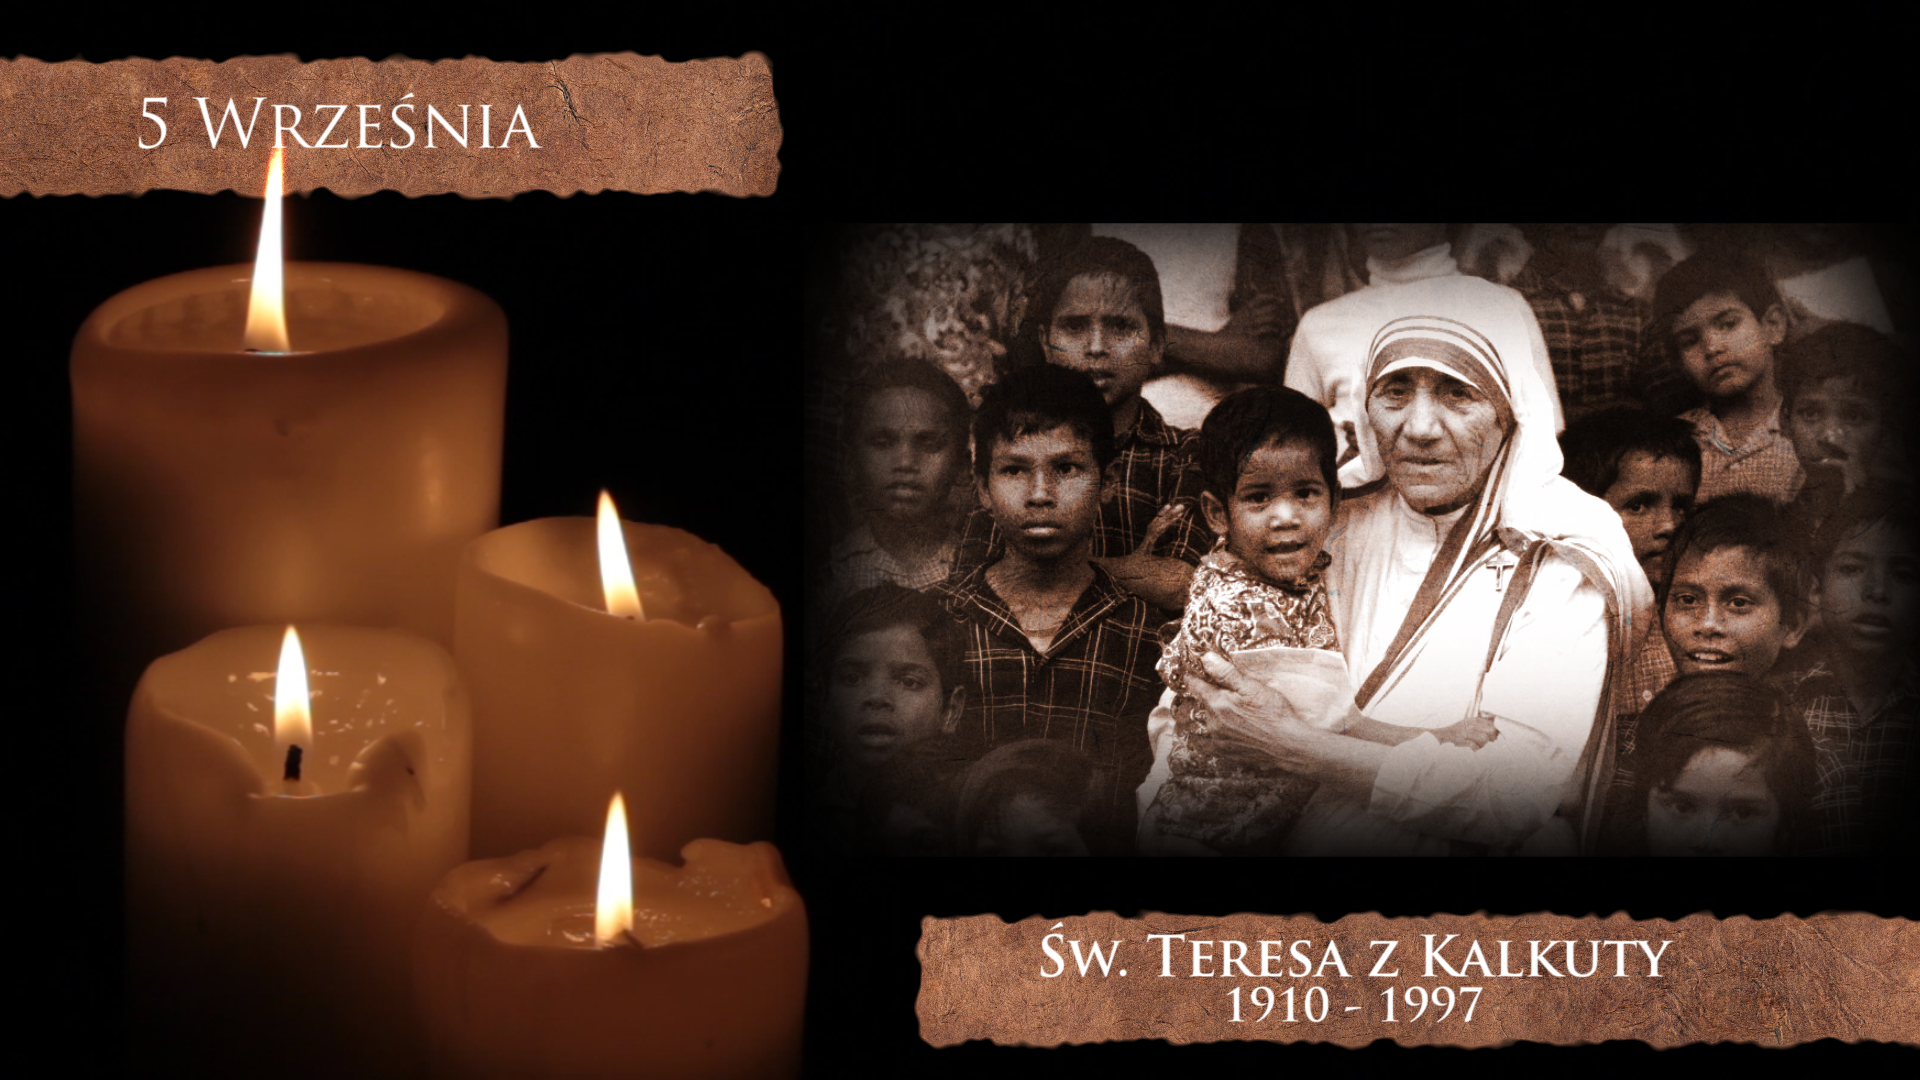 Święta Matka Teresa z Kalkuty